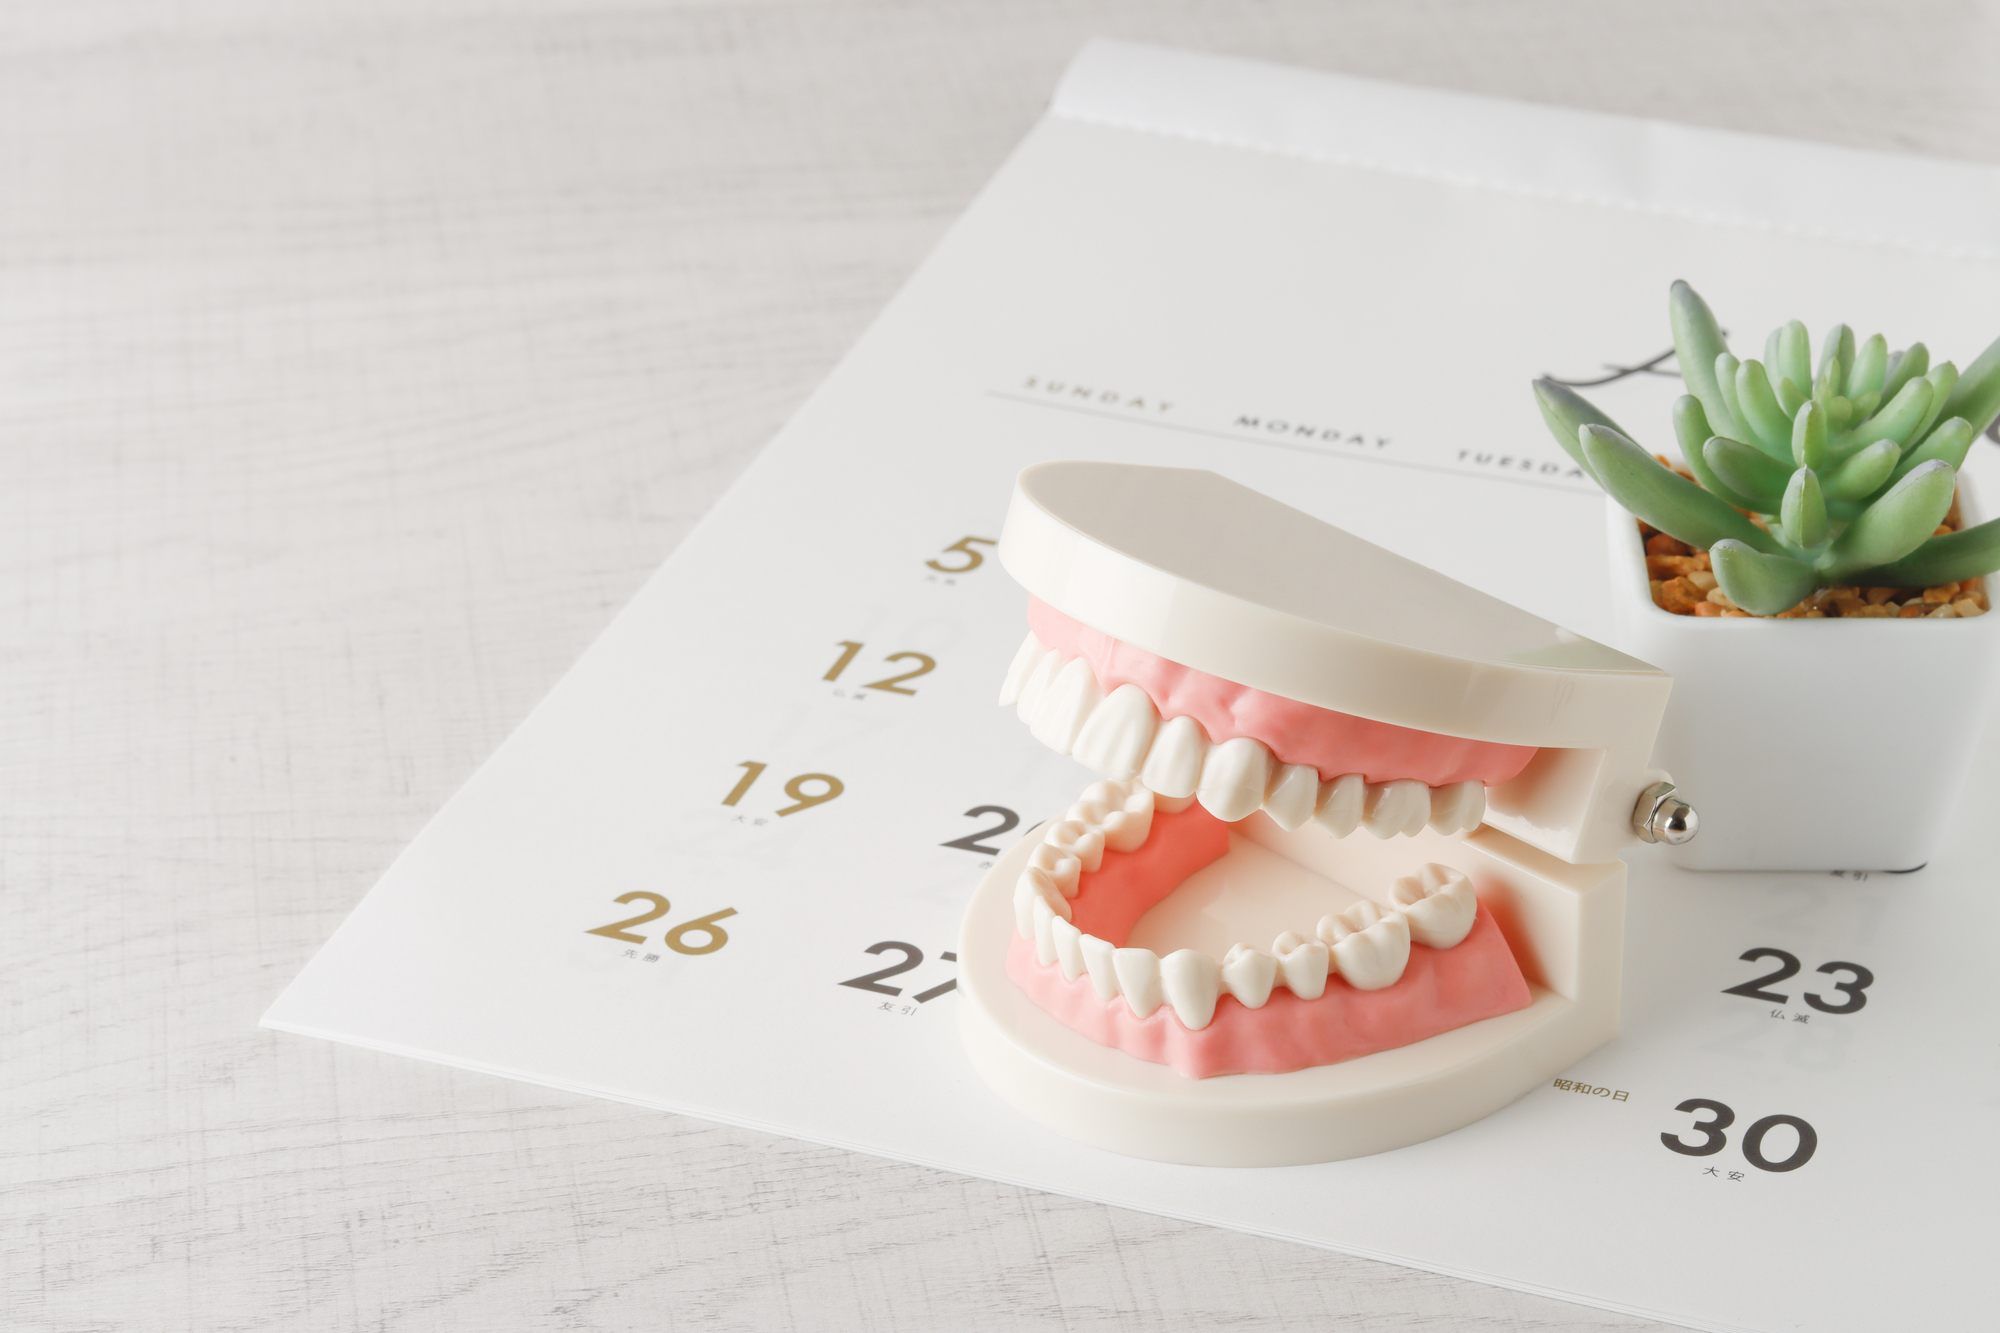 カレンダーと歯の模型の画像